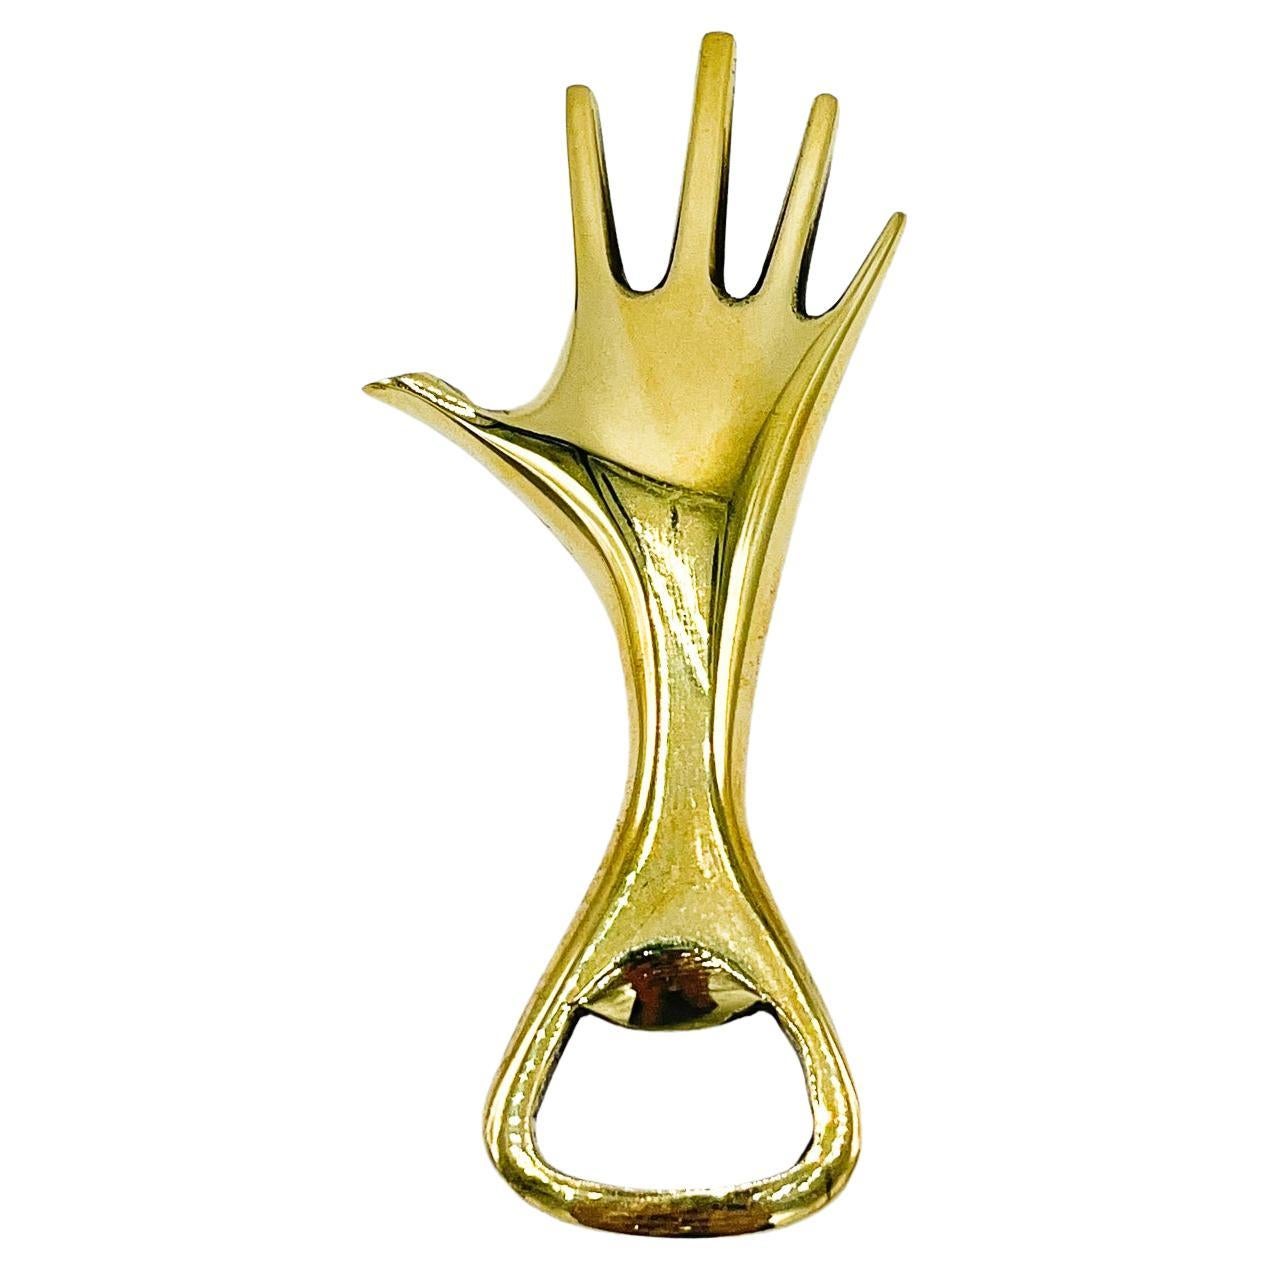 Carl Aubock Handflaschenöffner aus poliertem Messing #4224. Dieser skurrile Handflaschenöffner von Carl Aubock aus den 1950er Jahren ist ein wunderbares Beispiel für die Verbindung von Form und Funktionalität, die den Namen Aubock zum Synonym für